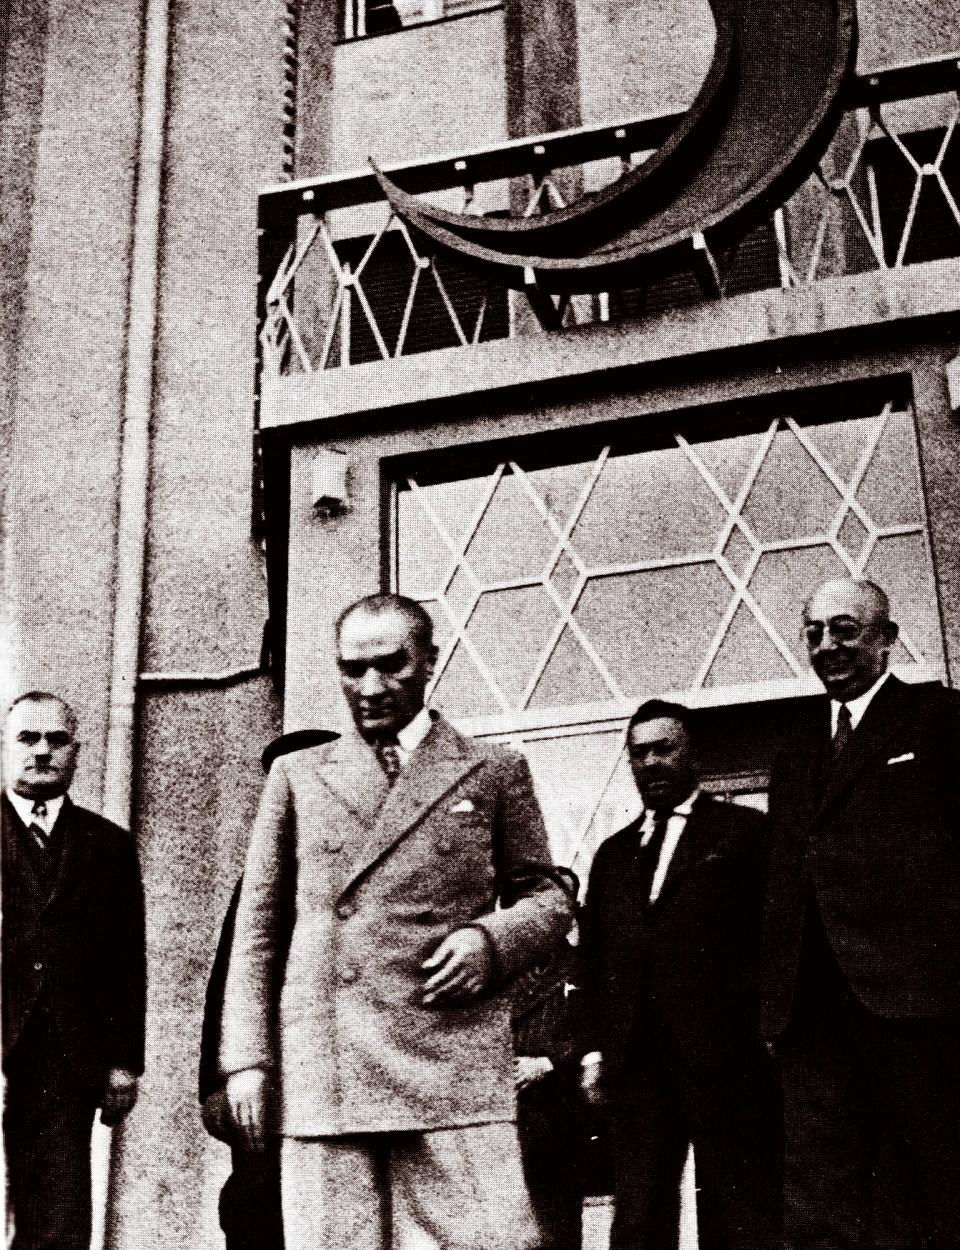 <p>Türk Kızılay, yurt içinde ve yurt dışında bulunan delegasyonları vasıtasıyla her yıl yaklaşık 30 milyon ihtiyaç sahibinin yardımına koşuyor.<br />
<br />
<em><strong>Fotoğraf: Mustafa Kemal Atatürk, 18 Haziran 1935'te Ankara'da bulunan Kızılay binasını ziyaret etmişti. (Arşiv)</strong></em></p>
